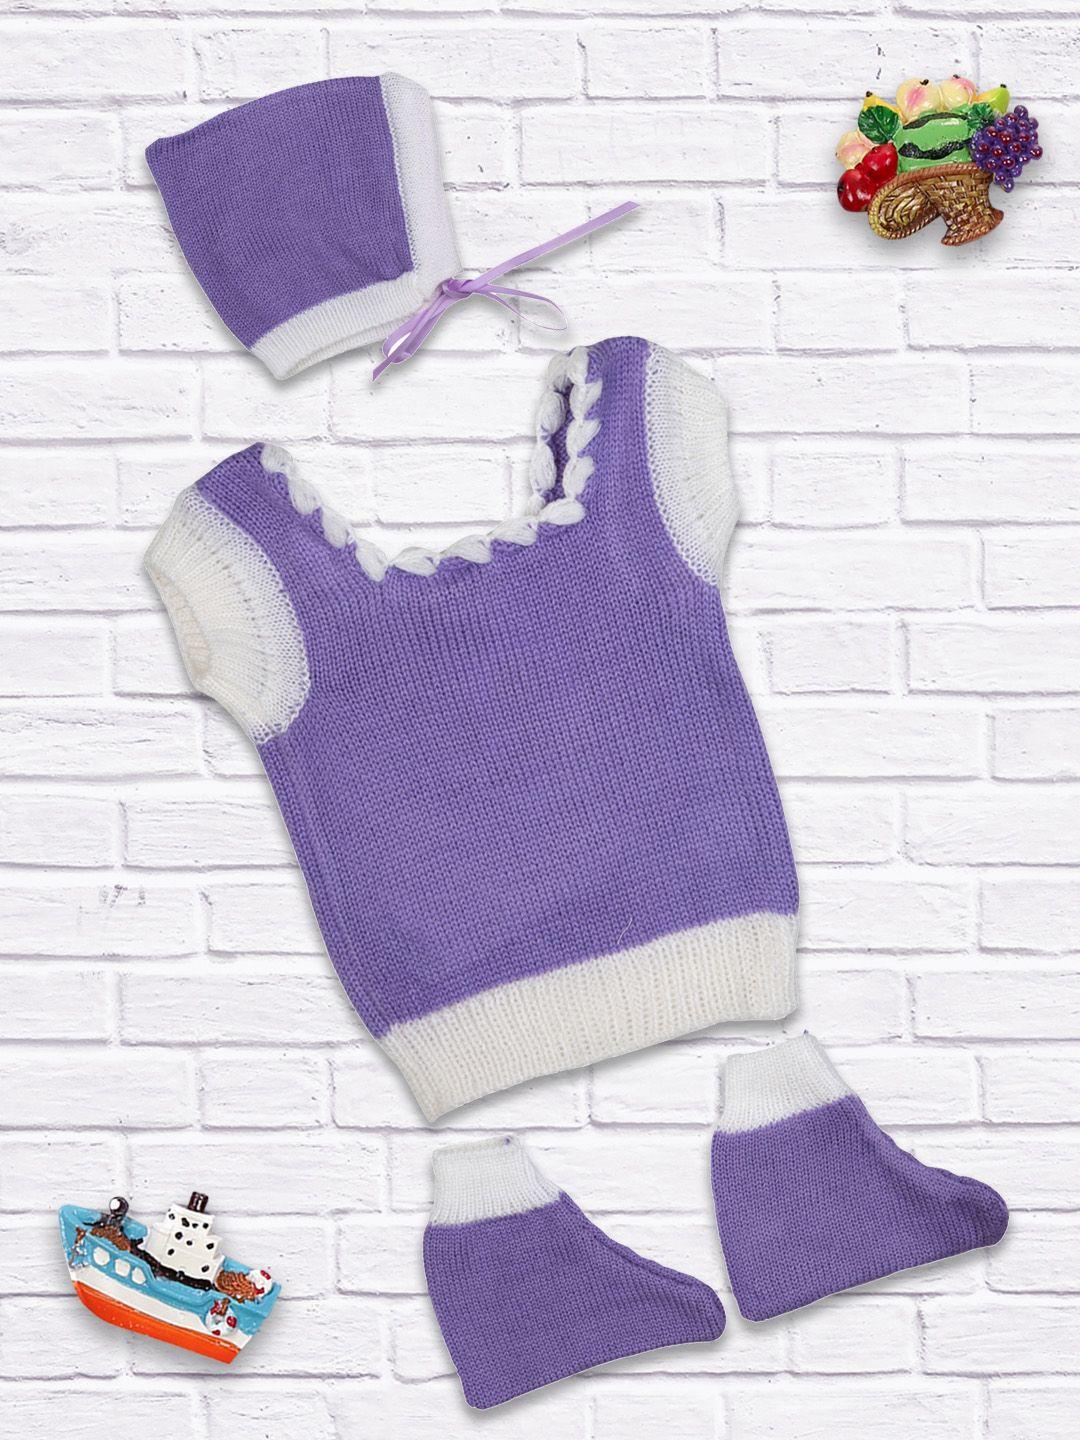 meemee kids lavender solid sweater set